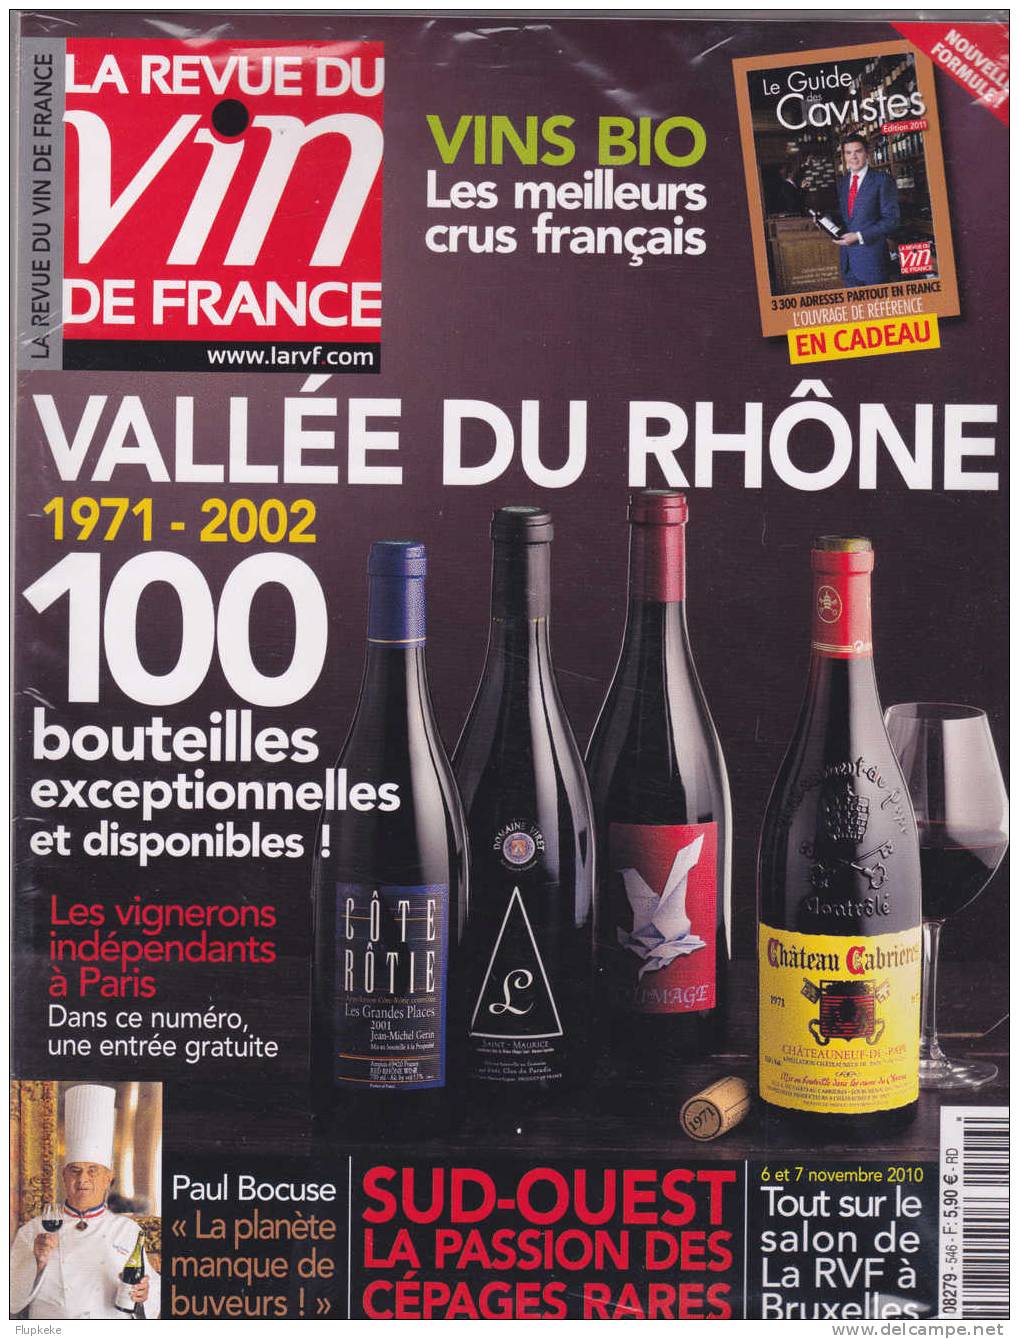 La Revue Du Vin De France 546 Novembre 2010 Vallée Du Rhône 1971-2002 + Guide Des Cavistes Édition 2011 - Cuisine & Vins